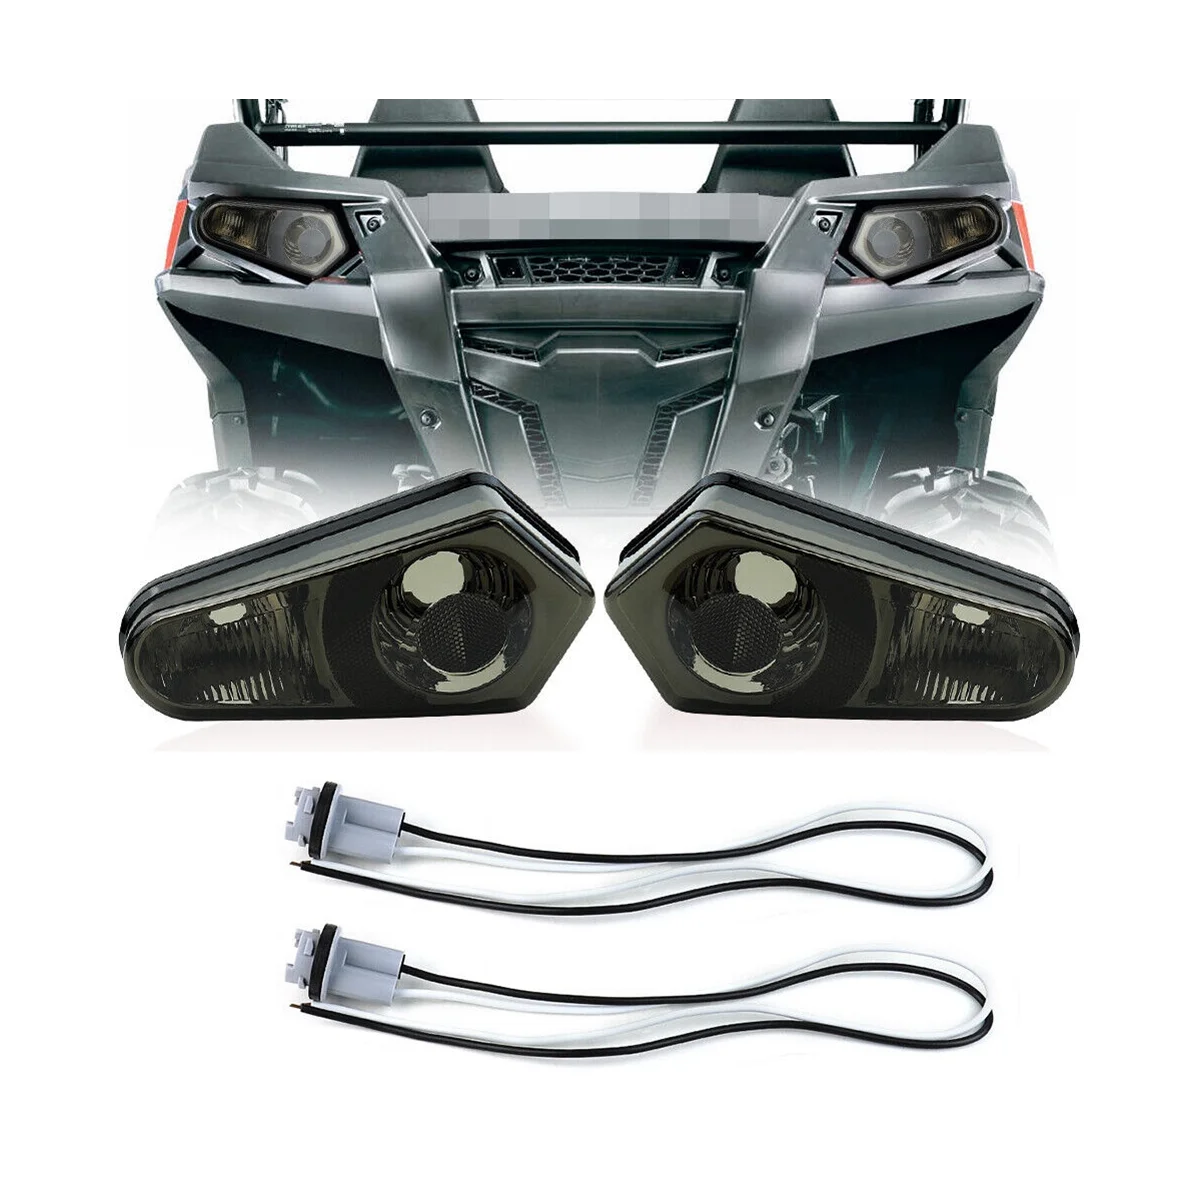 

Tail Light for Polaris ATV 2005-2013 Sportsman 500-800 12V LED Tail Light Brake Light Kit 2411153 Smoked Black